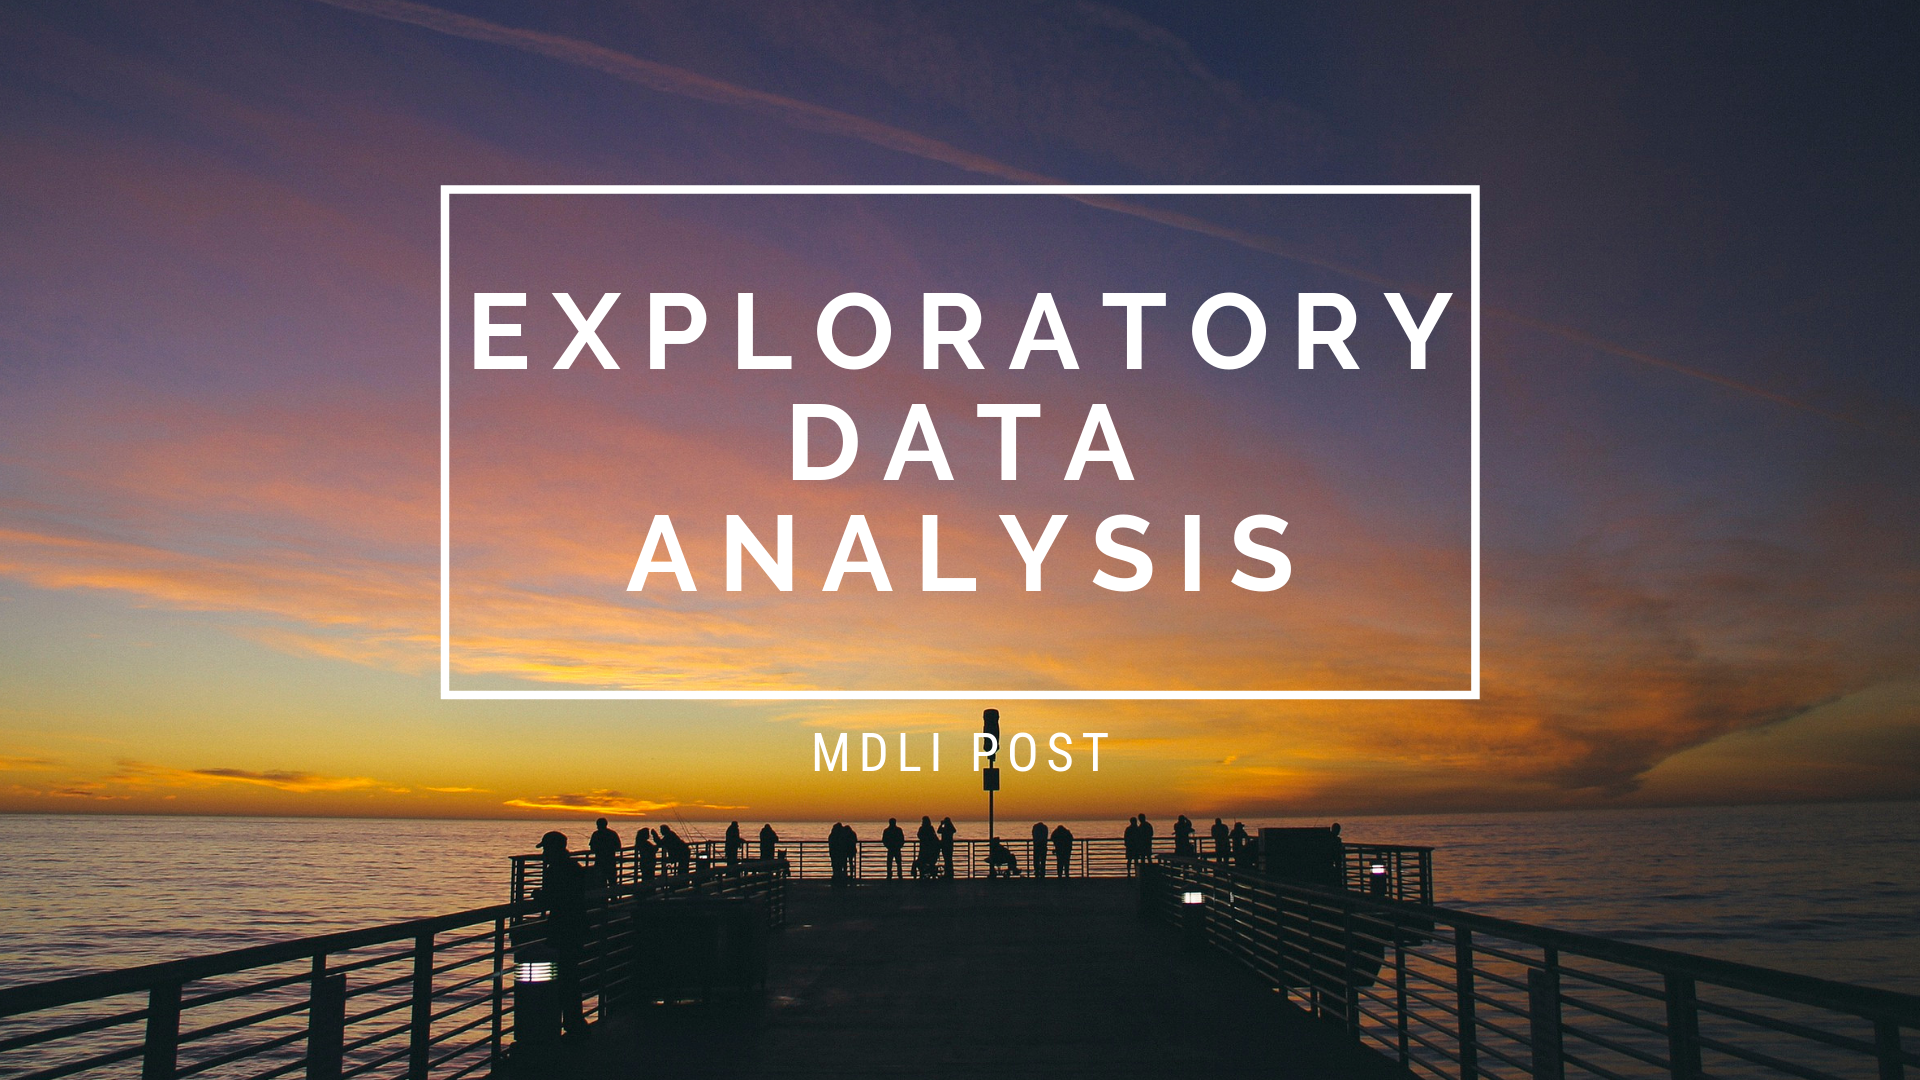 טכניקות שונות ל-Exploratory Data Analysis (סיכום פוסט)